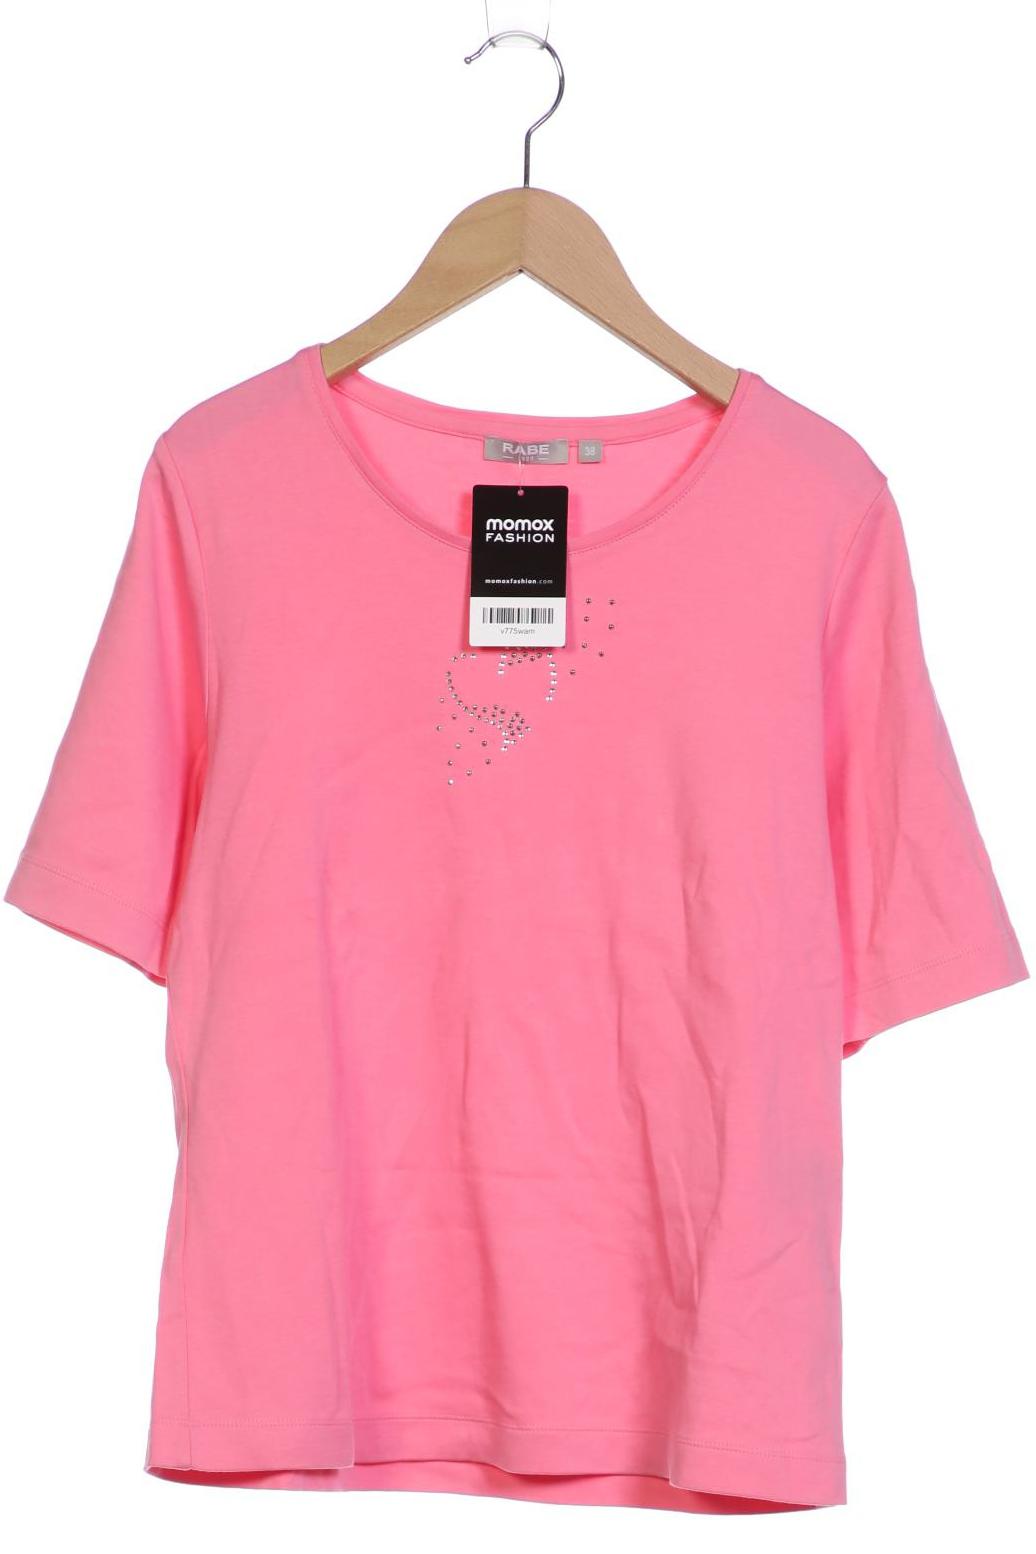 RABE Damen T-Shirt, pink von RABE